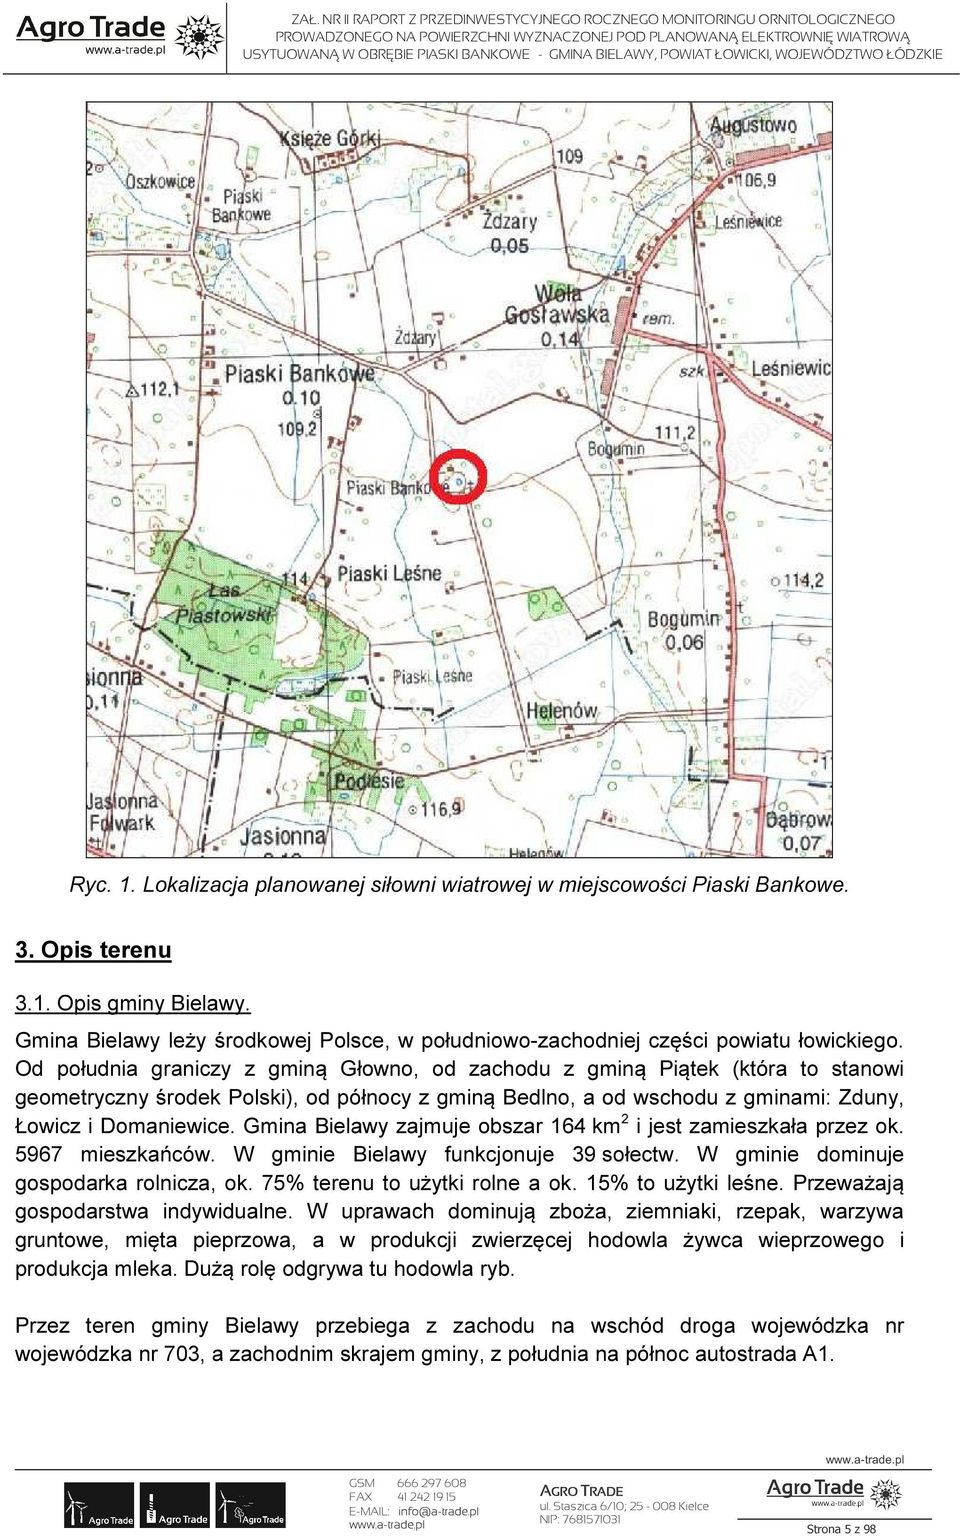 Od południa graniczy z gminą Głowno, od zachodu z gminą Piątek (która to stanowi geometryczny środek Polski), od północy z gminą Bedlno, a od wschodu z gminami: Zduny, Łowicz i Domaniewice.